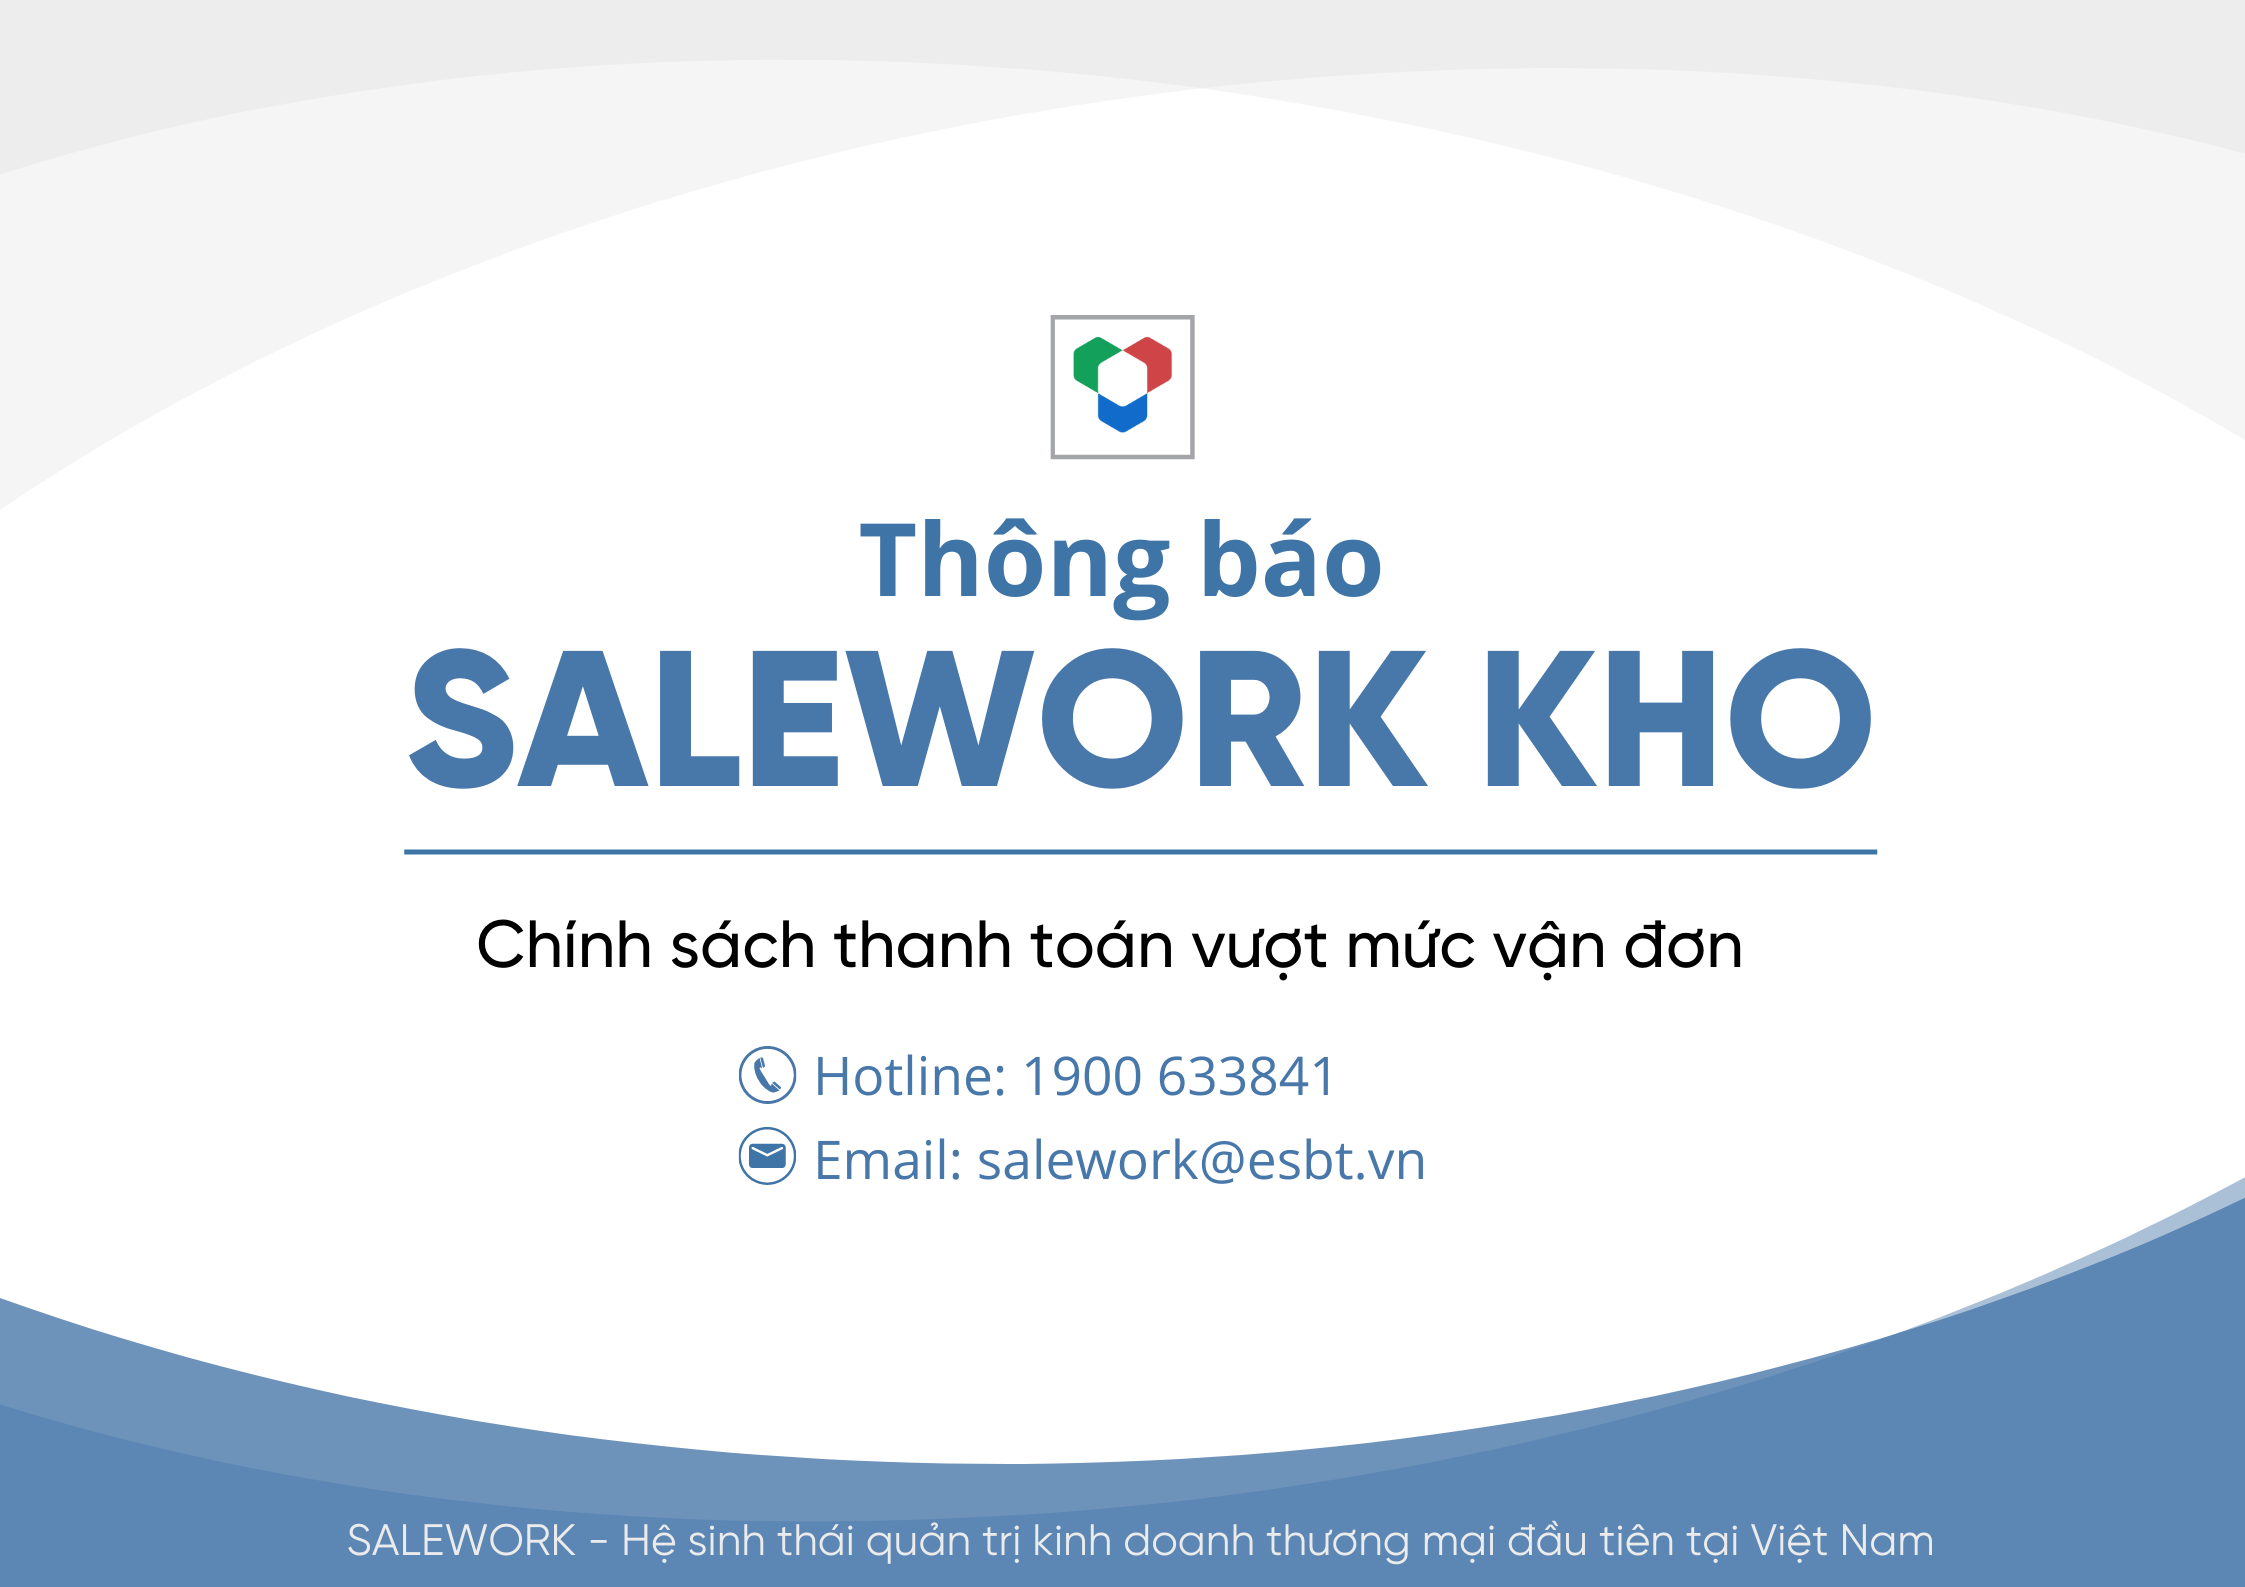 [Thông báo] Cập nhật mới nhất về chính sách thanh toán vượt mức vận đơn tại Salework Kho - 85